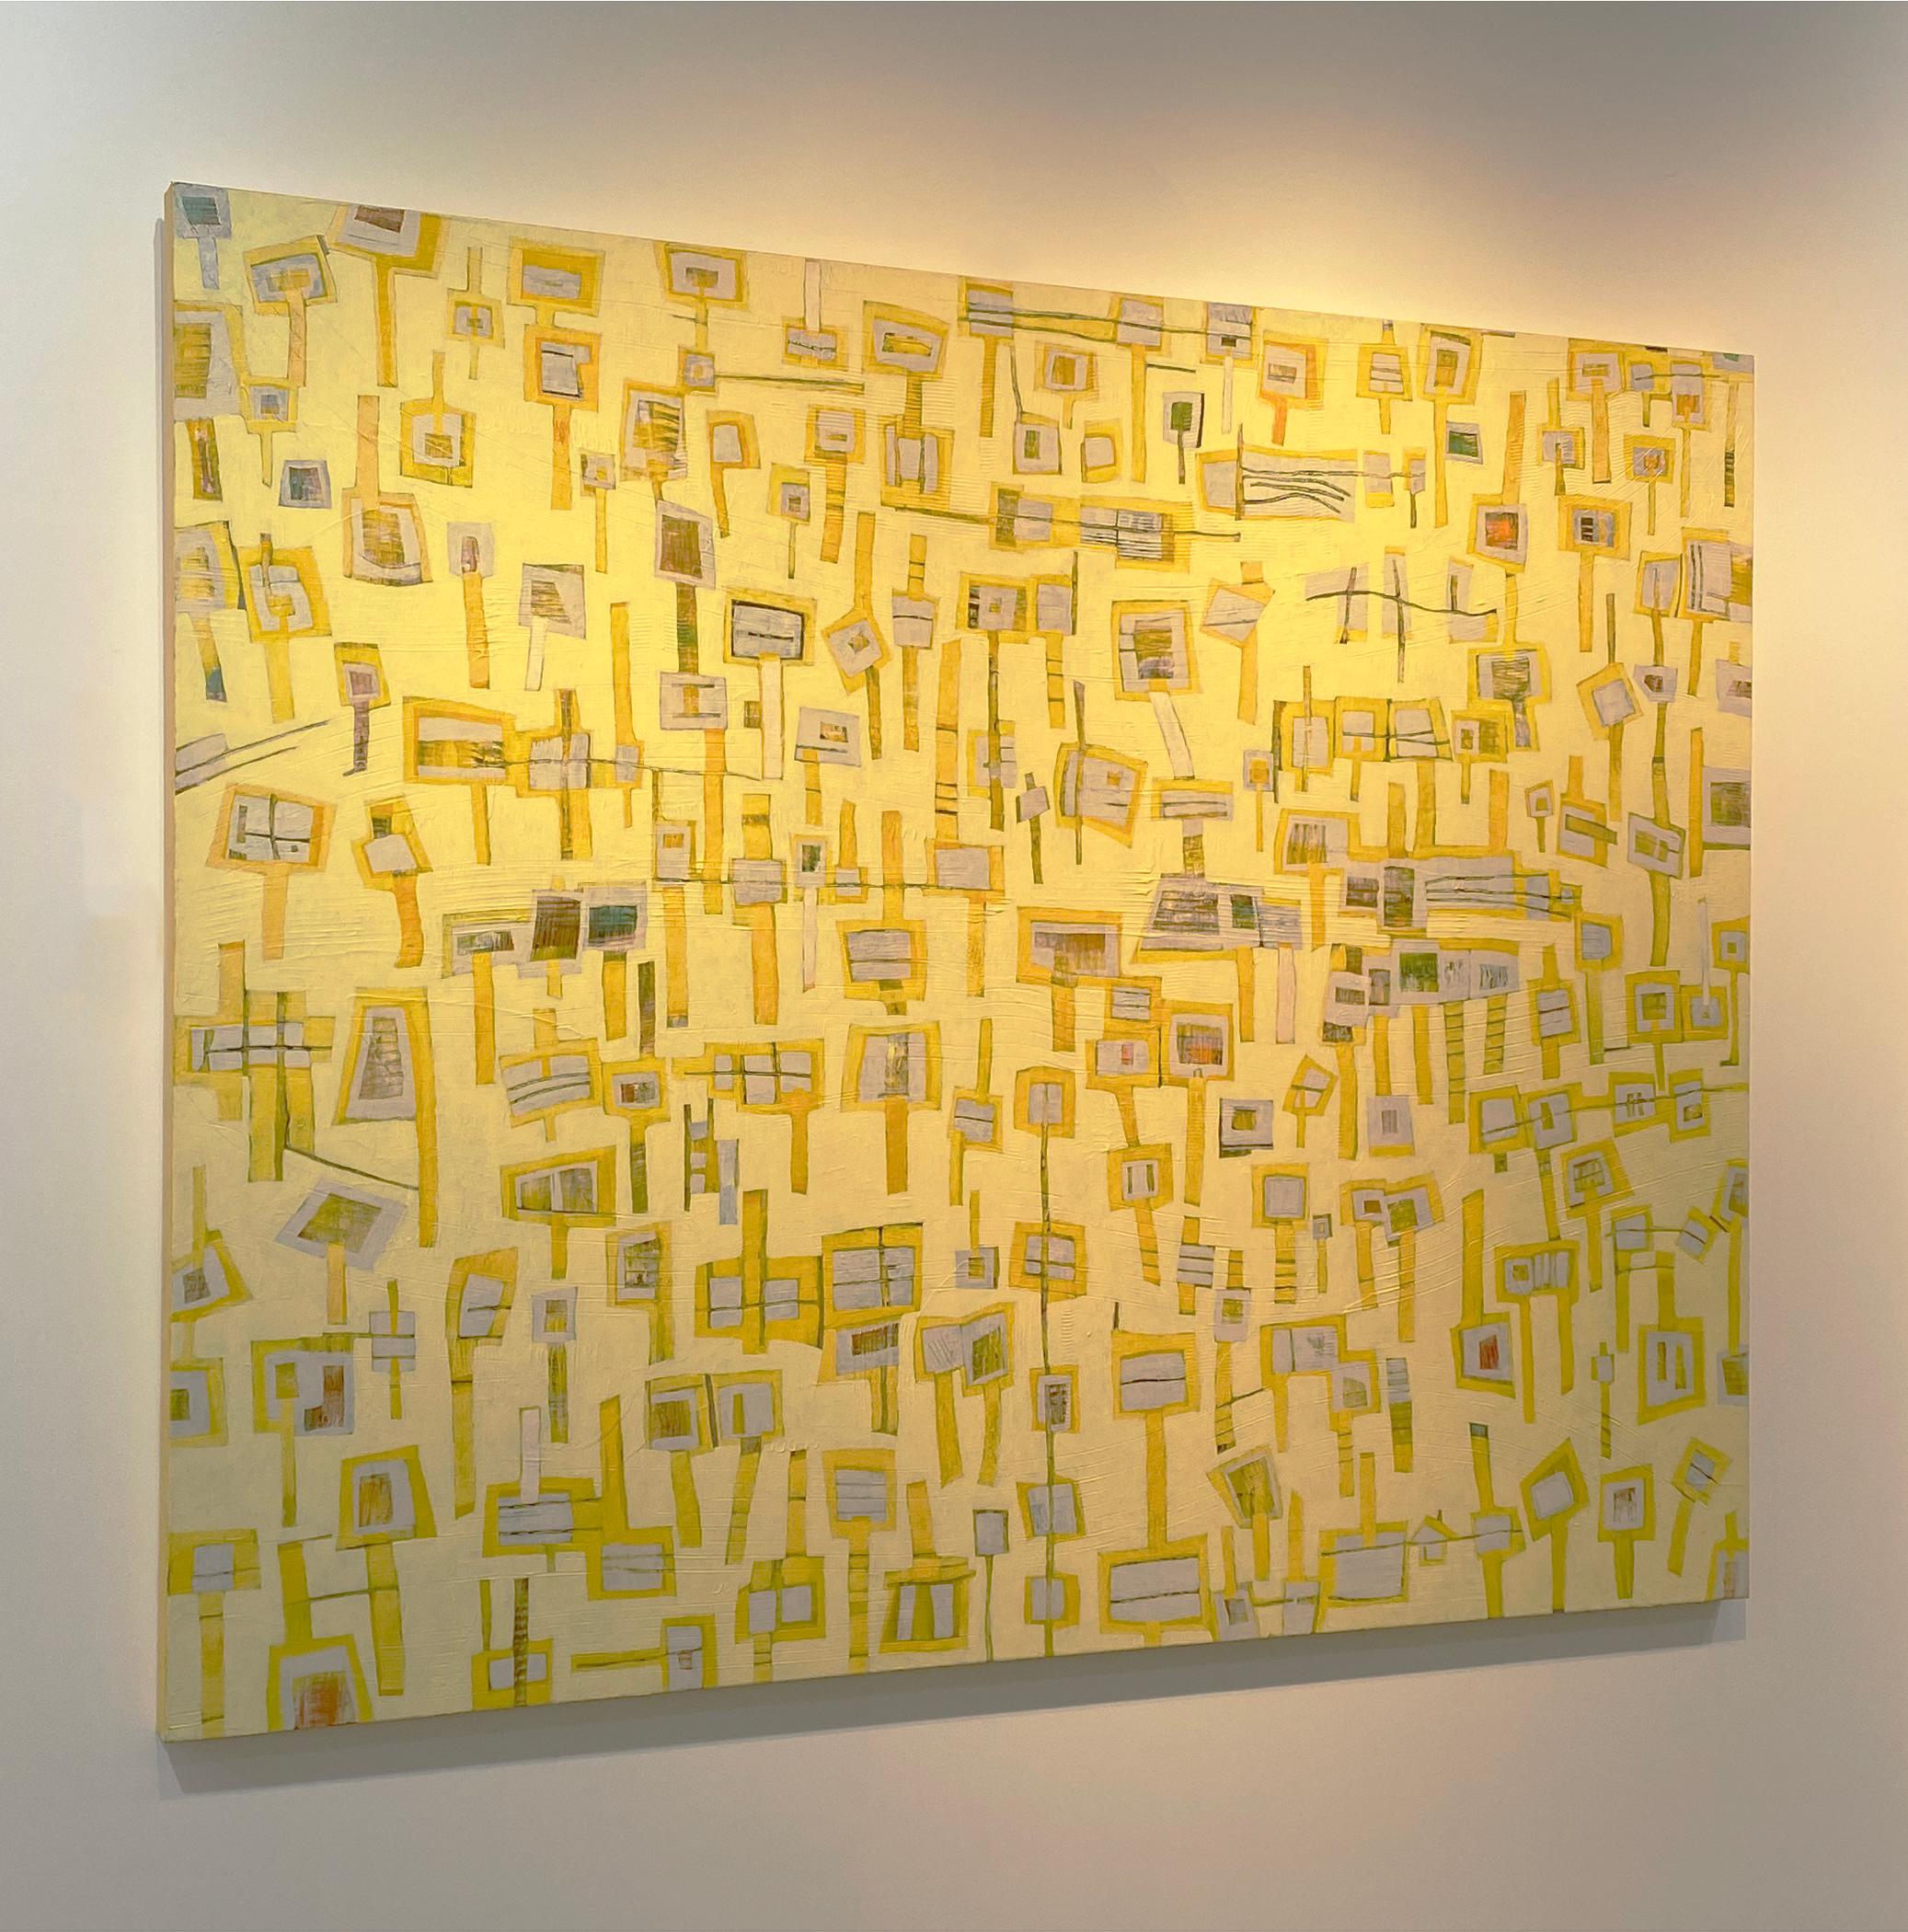 Cette peinture à grande échelle est réalisée avec de la peinture acrylique sur toile. Des rectangles jaune vif et gris sont assemblés pour créer des formes rappelant des sucettes géométriques. Des accents de rouge et de bleu profonds sont également